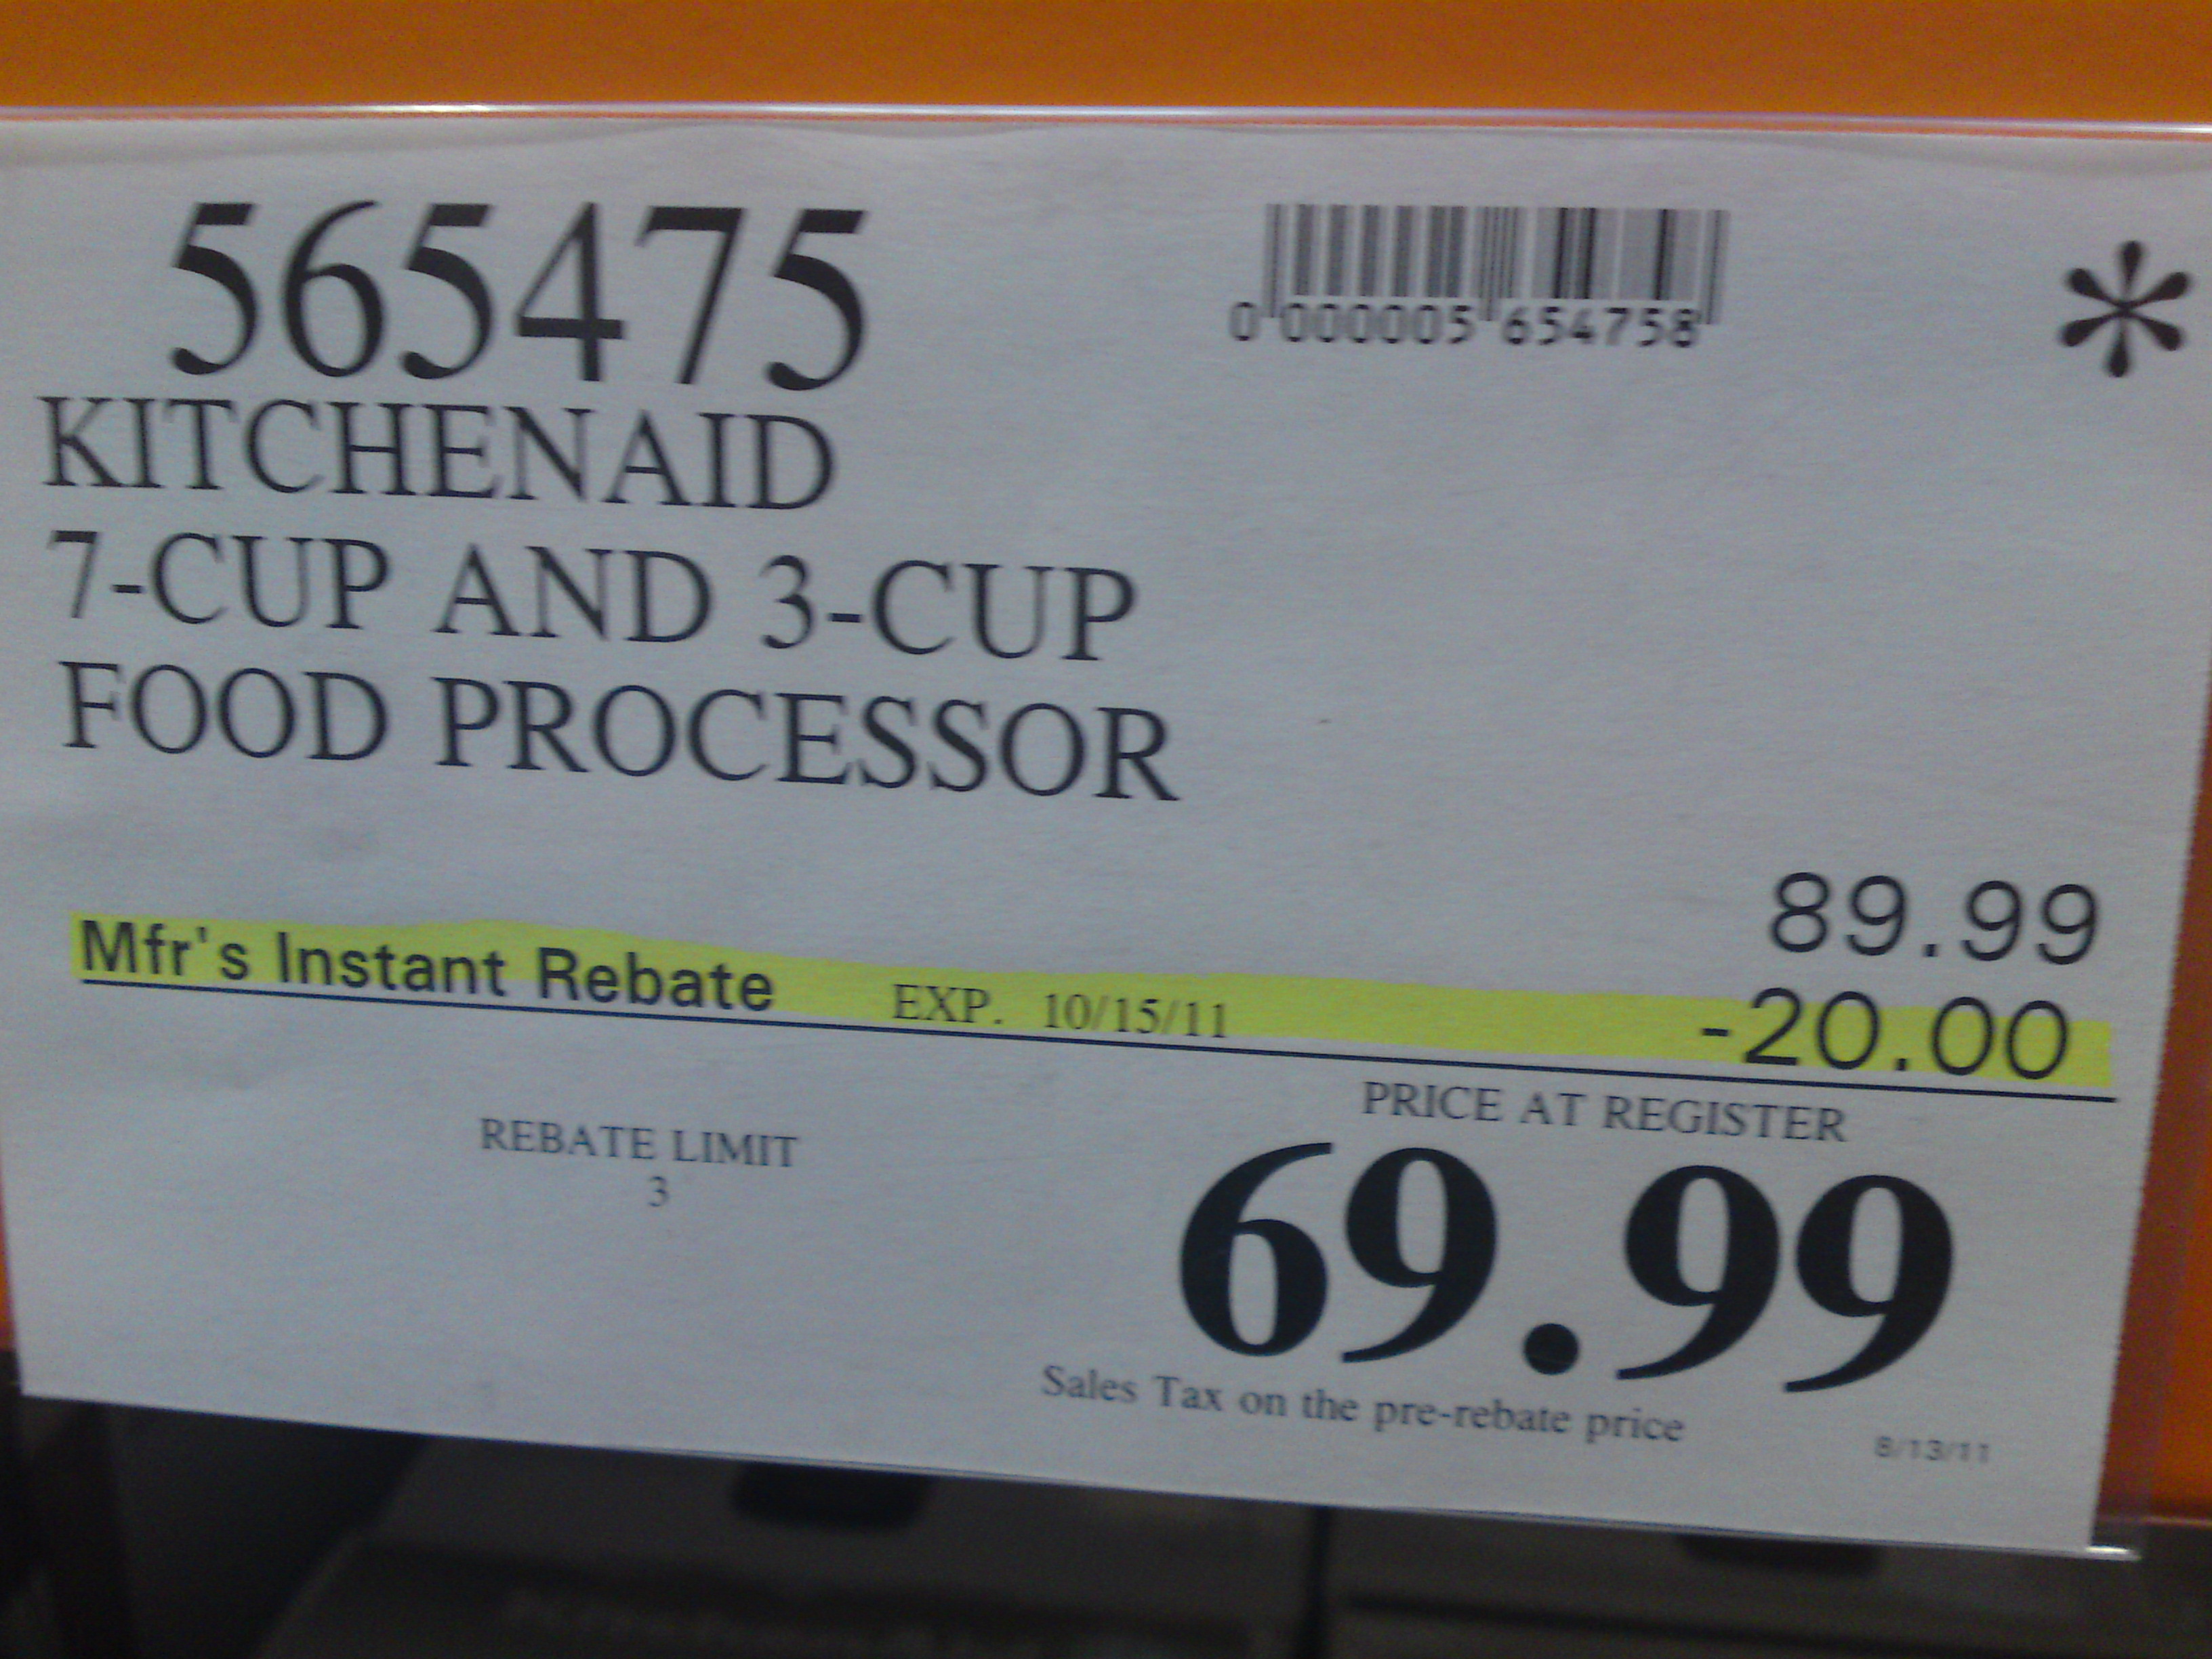 Food Processor Price Range